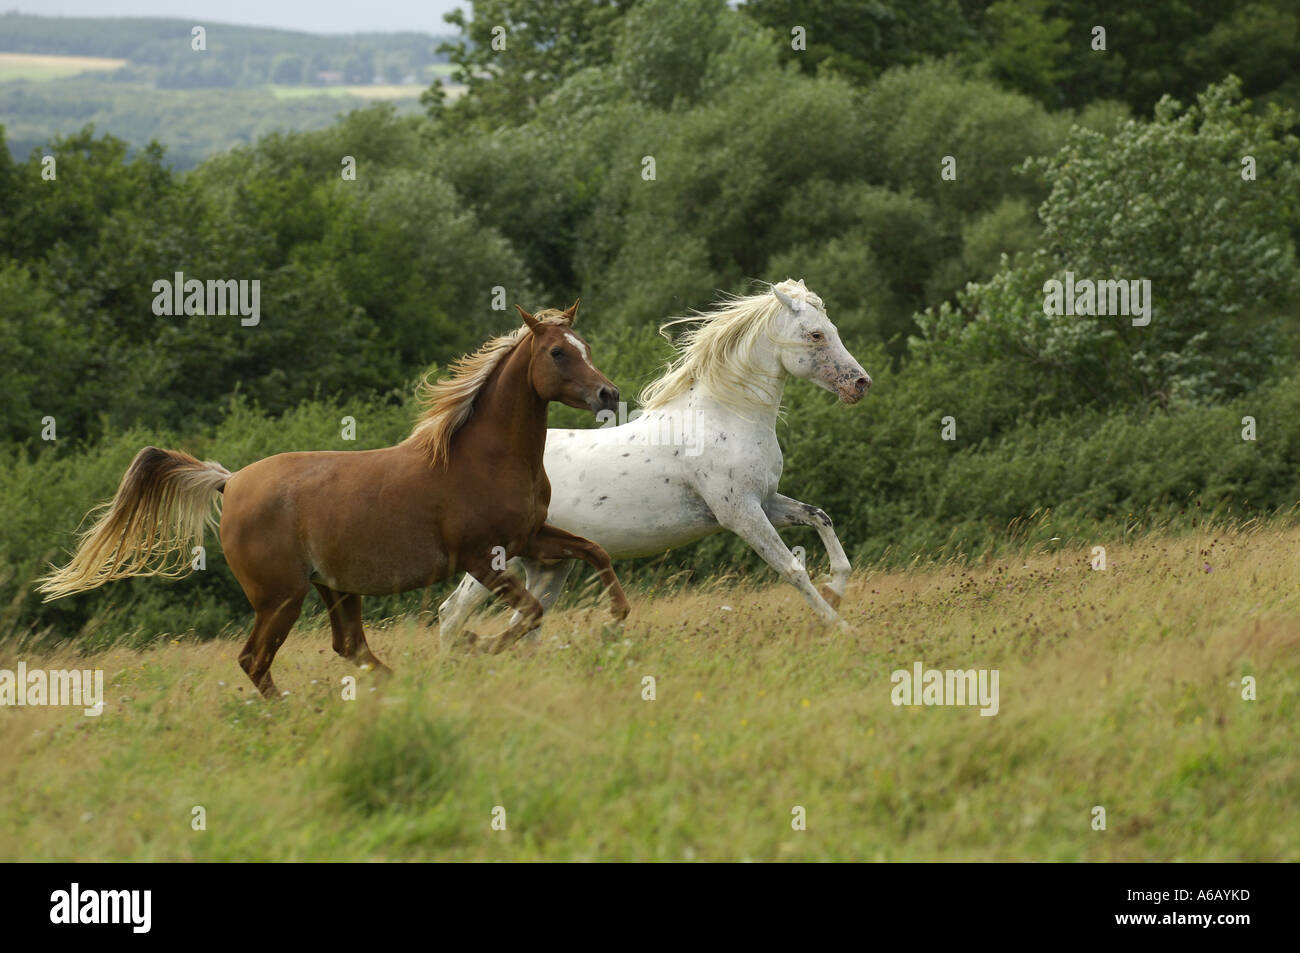 Thoroughbred Arabian Horse e metà cavallo di razza Foto Stock